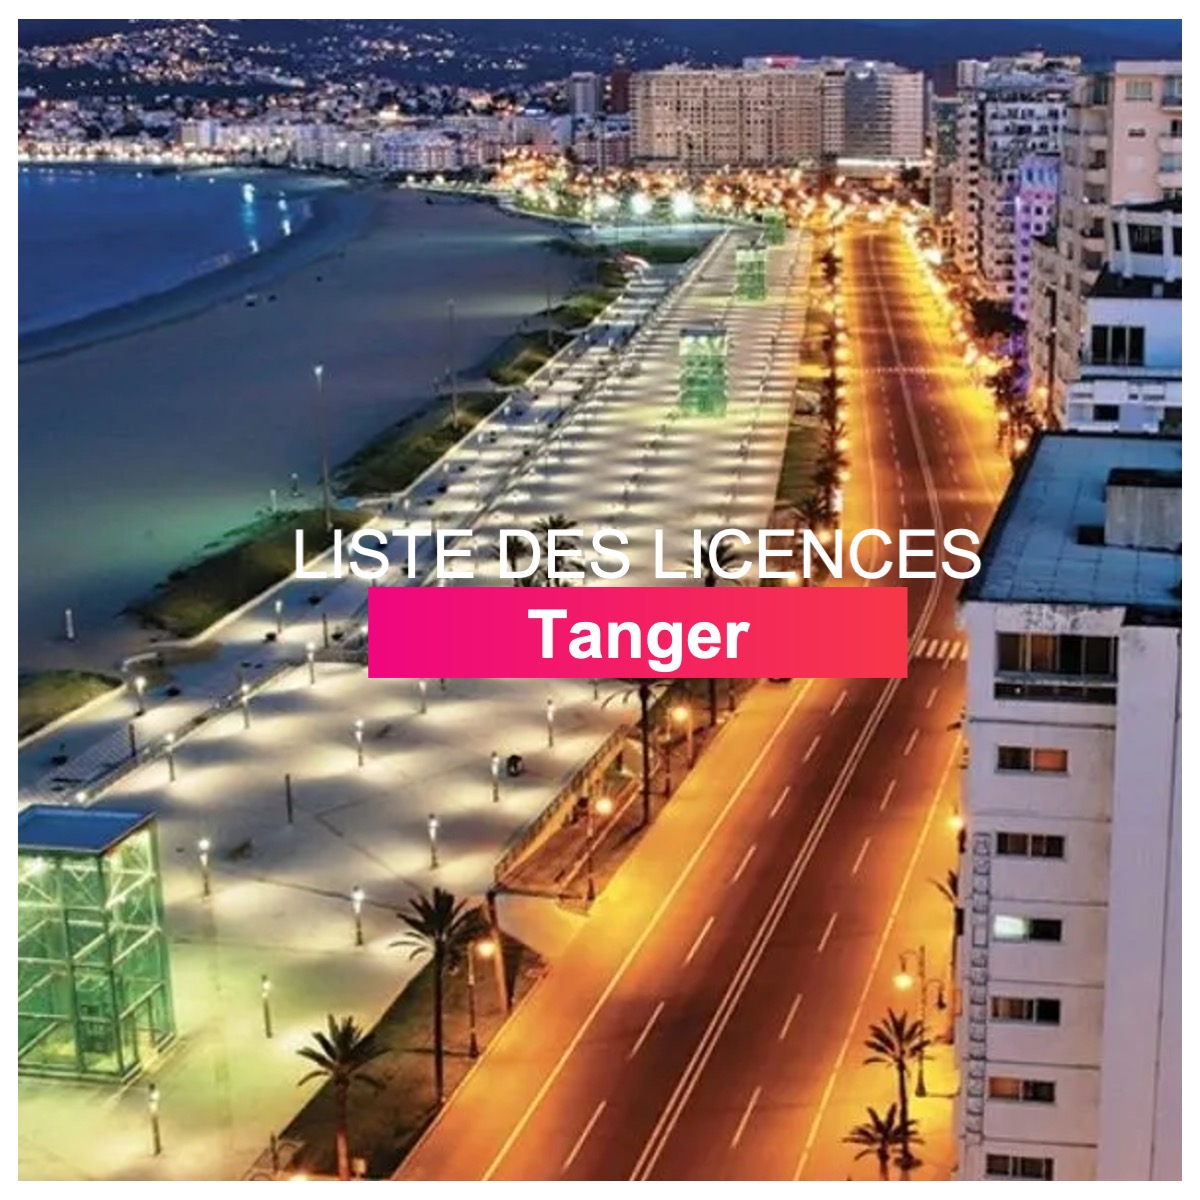 Liste des licences Tanger l Dates-concours.ma